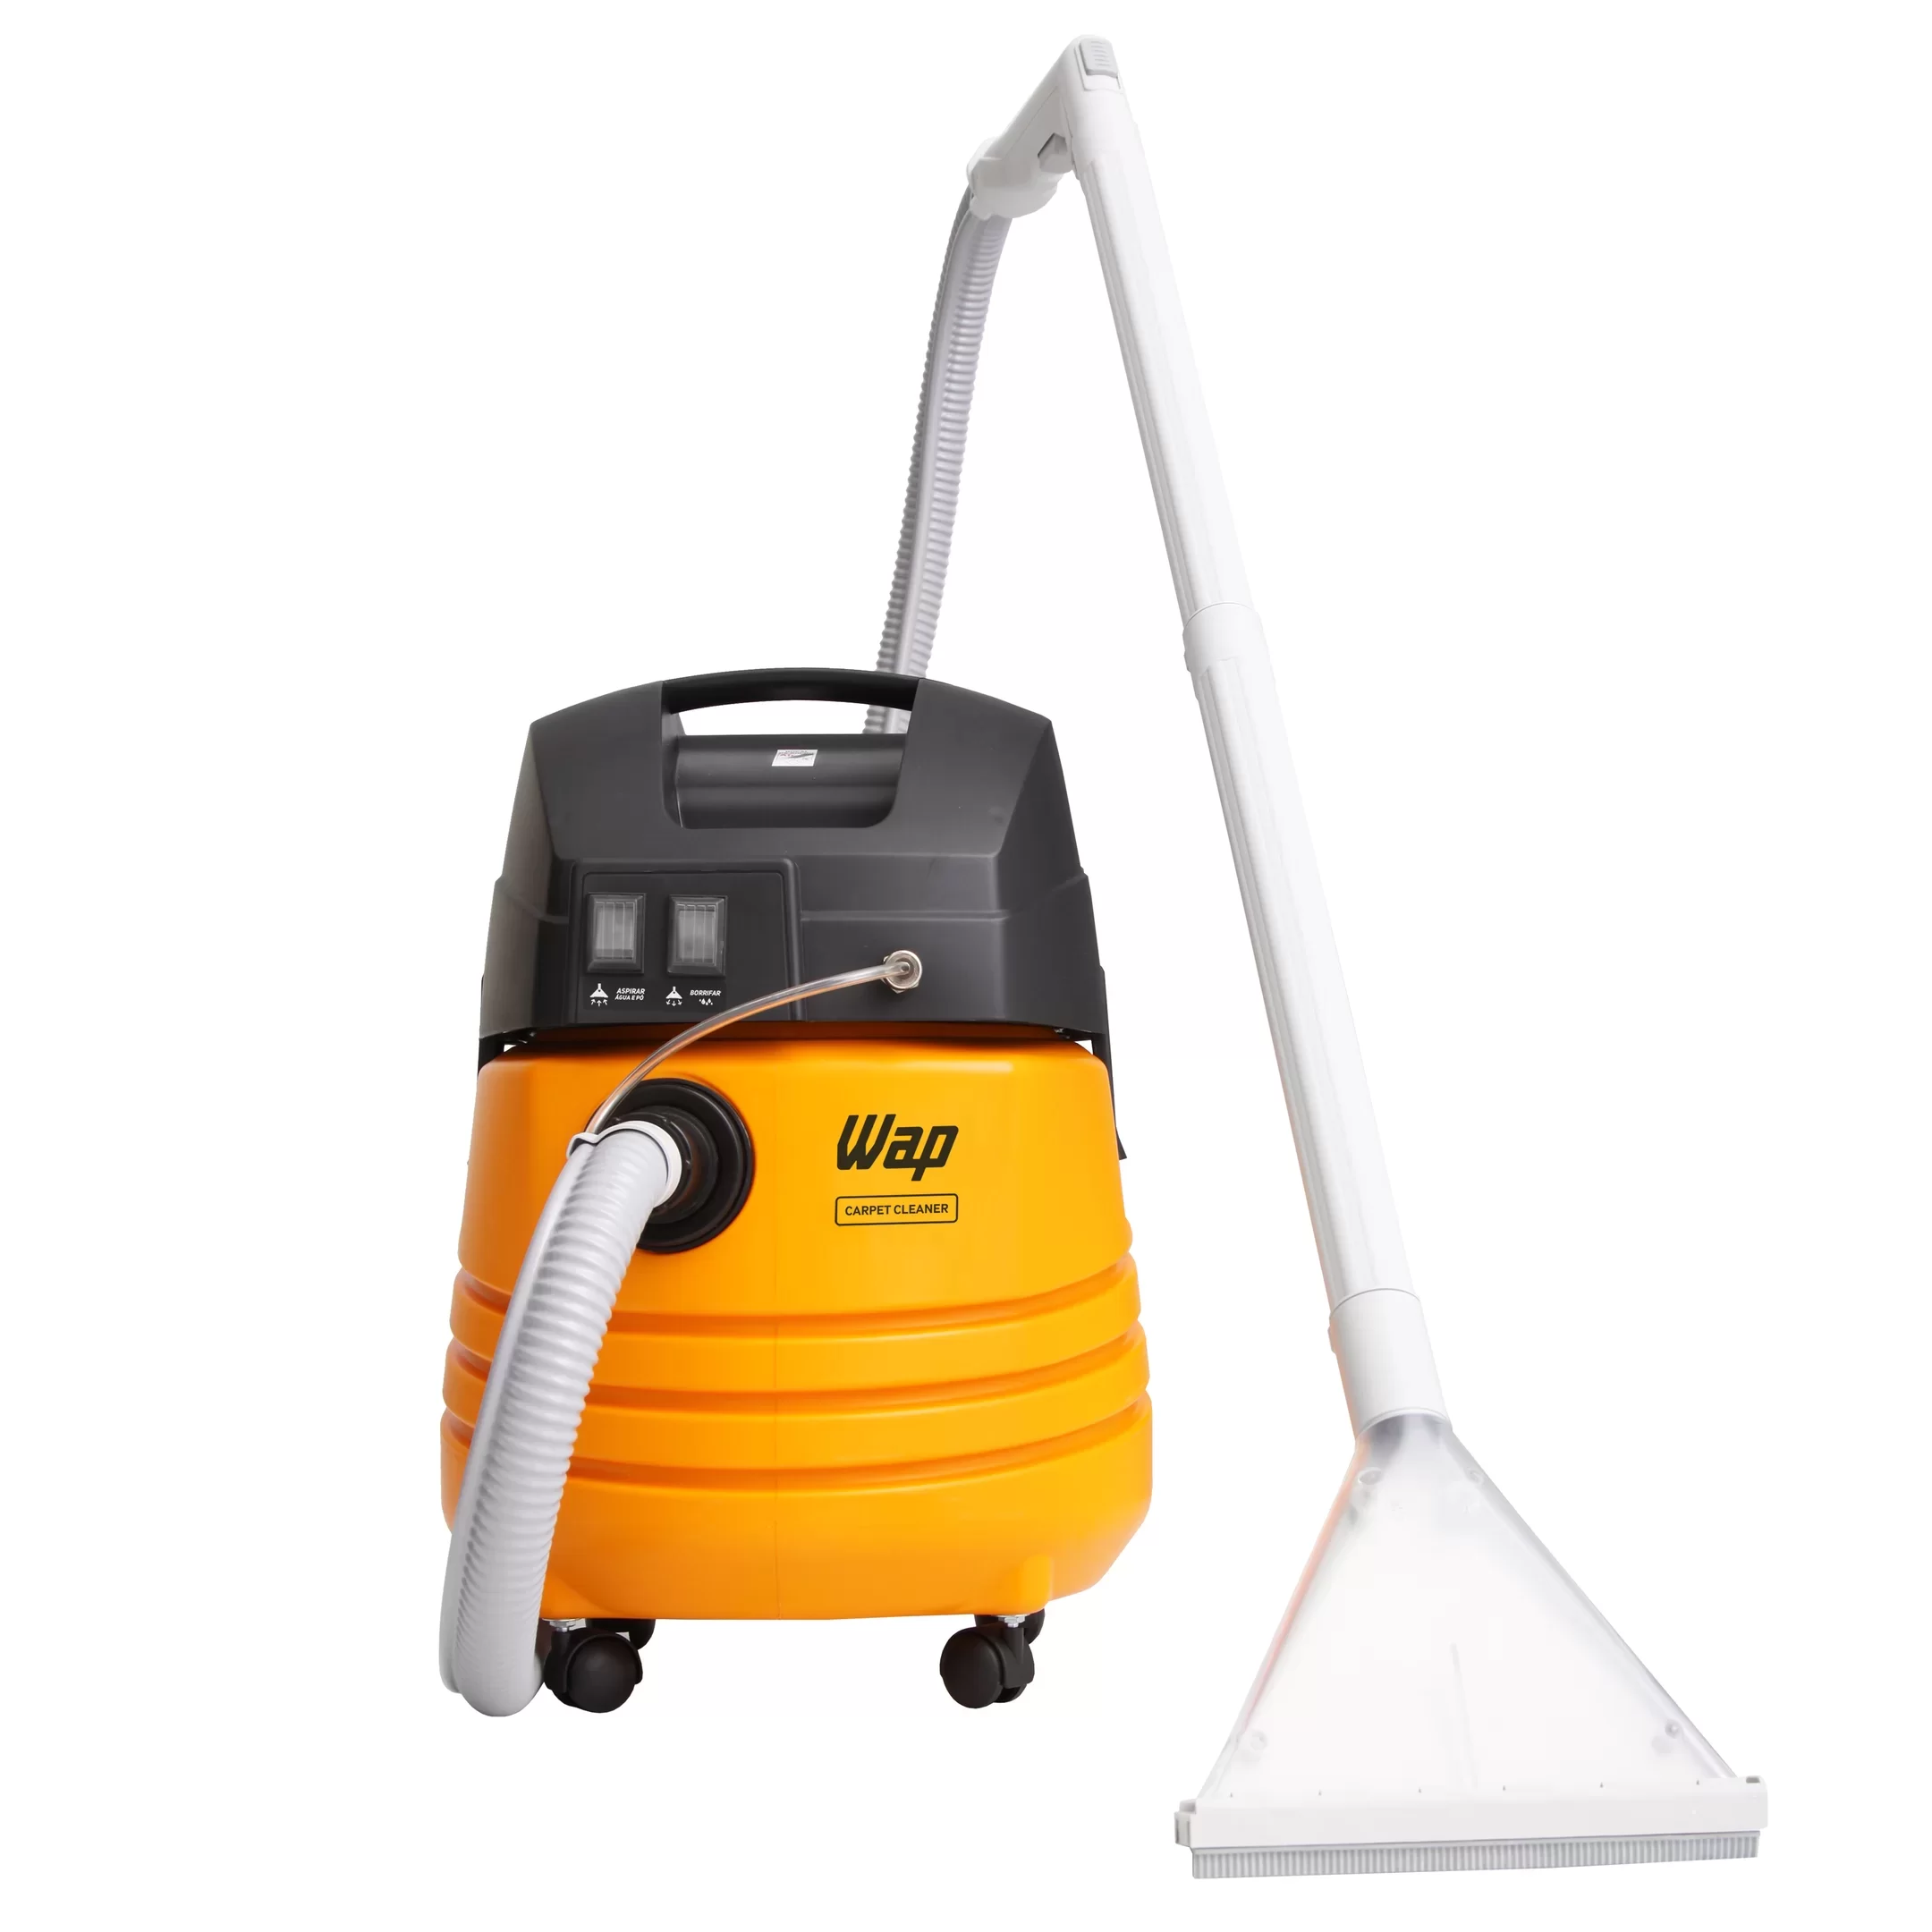 Extratora de Limpeza WAP Carpet Cleaner 1600W Uso Profissional Bocal de Sopro, Borrifa e Aspira 127V Amarelo/Preto - 6